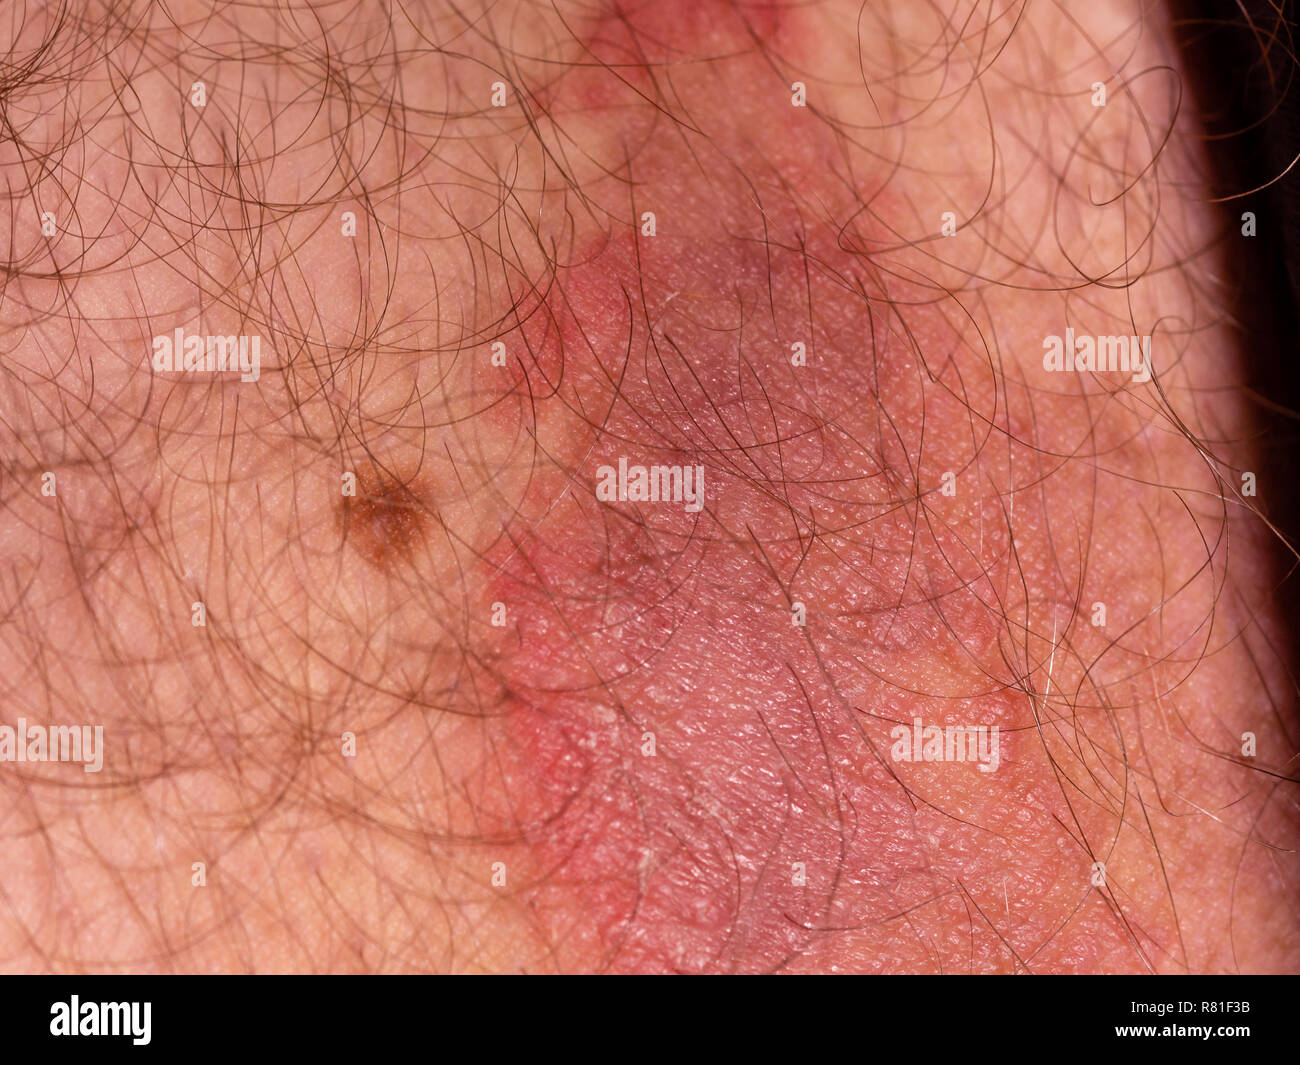 Infección micótica de la piel del muslo masculino Foto de stock